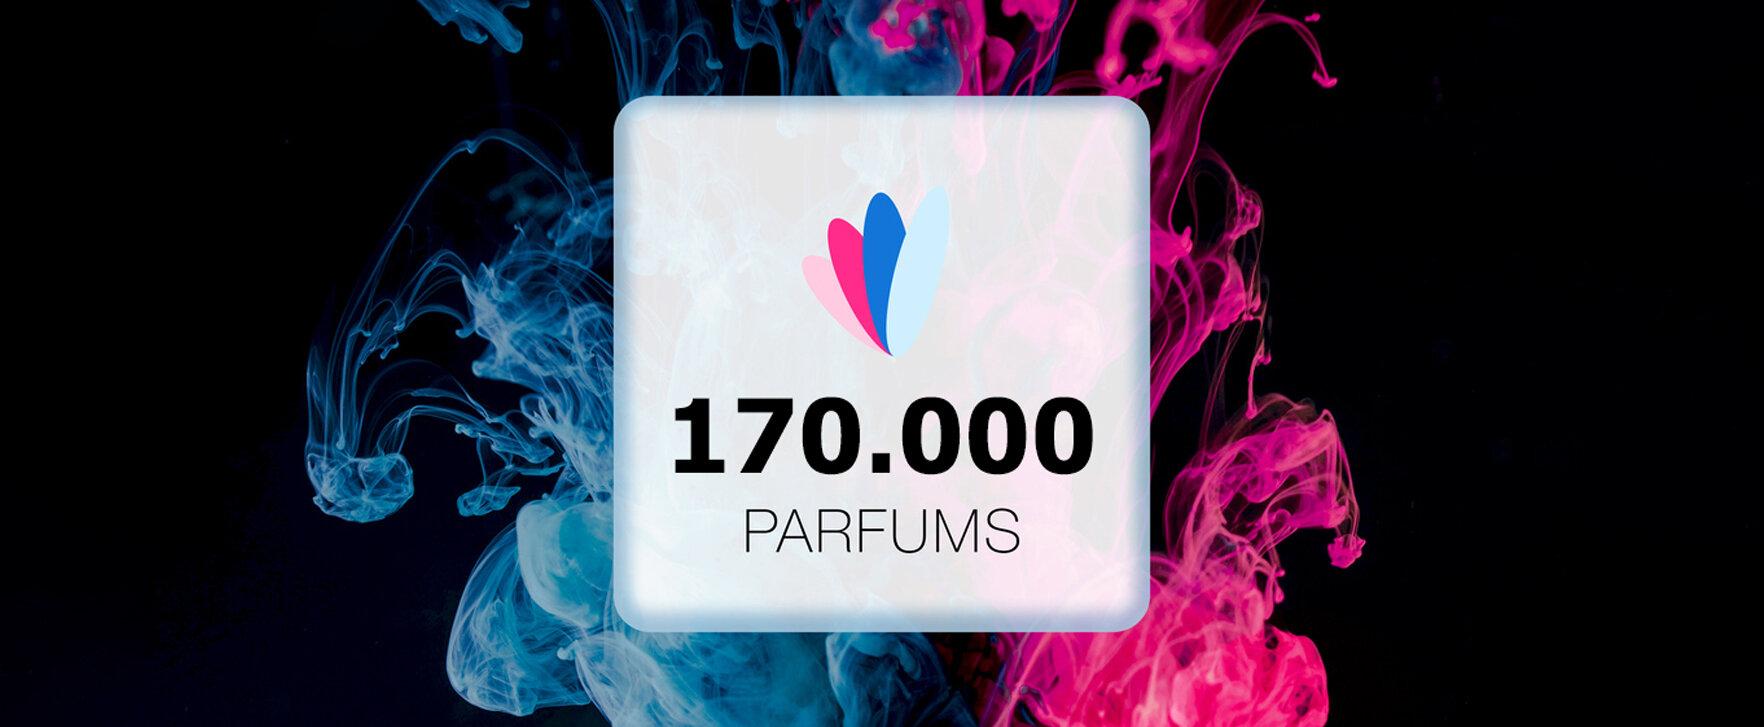 170.000 Parfums - ein weiterer Meilenstein ist erreicht!